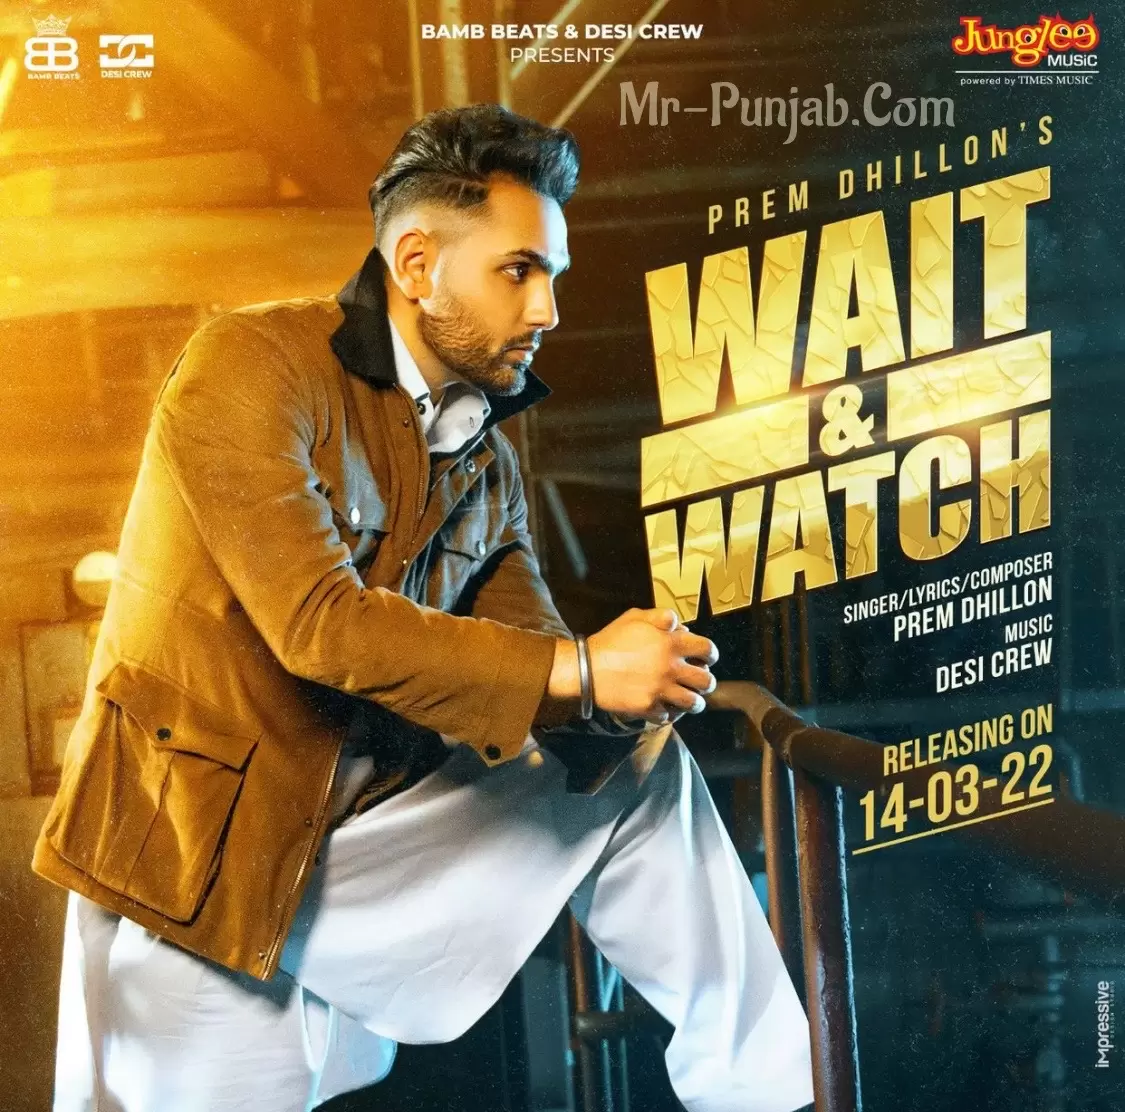 Wait Watch Prem Dhillon Mp3 Download Song - Mr-Punjab